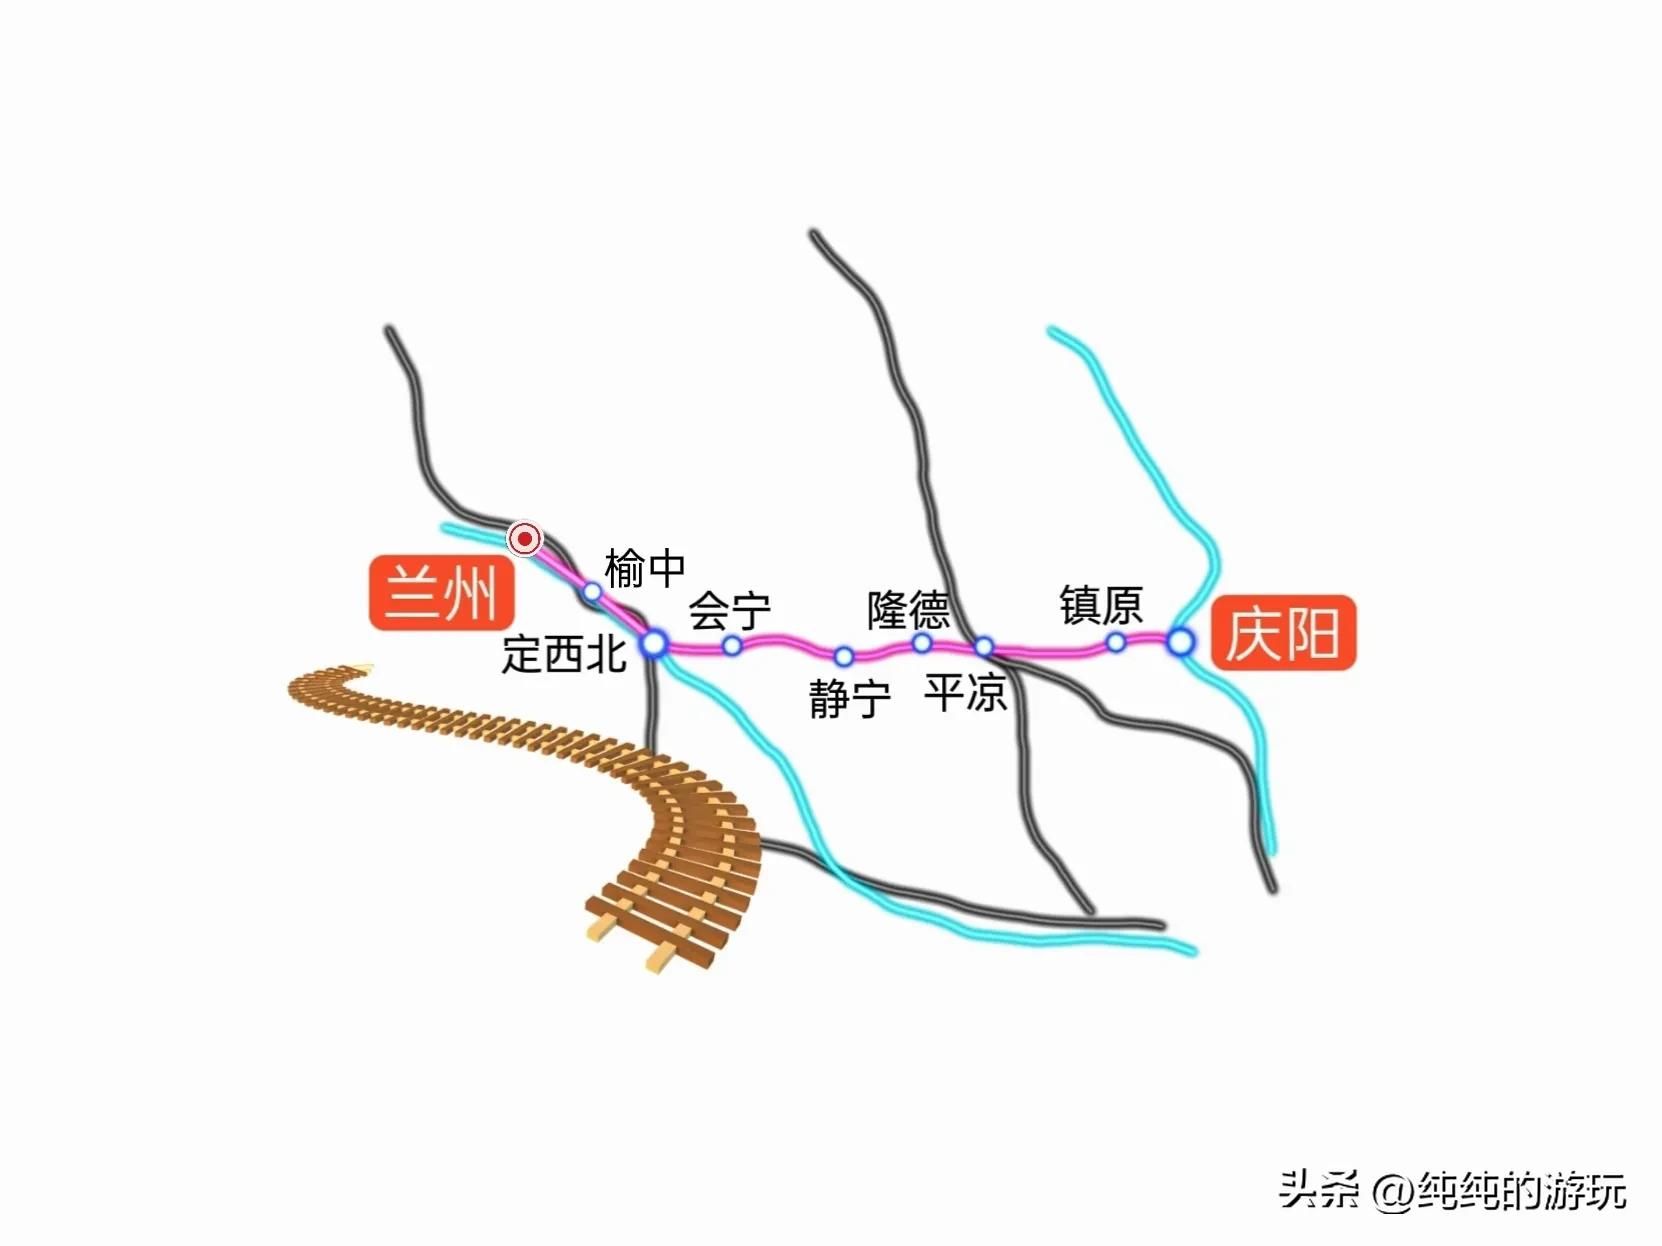 会宁铁路经过村镇(甘肃省规划中九条铁路的线路走向)